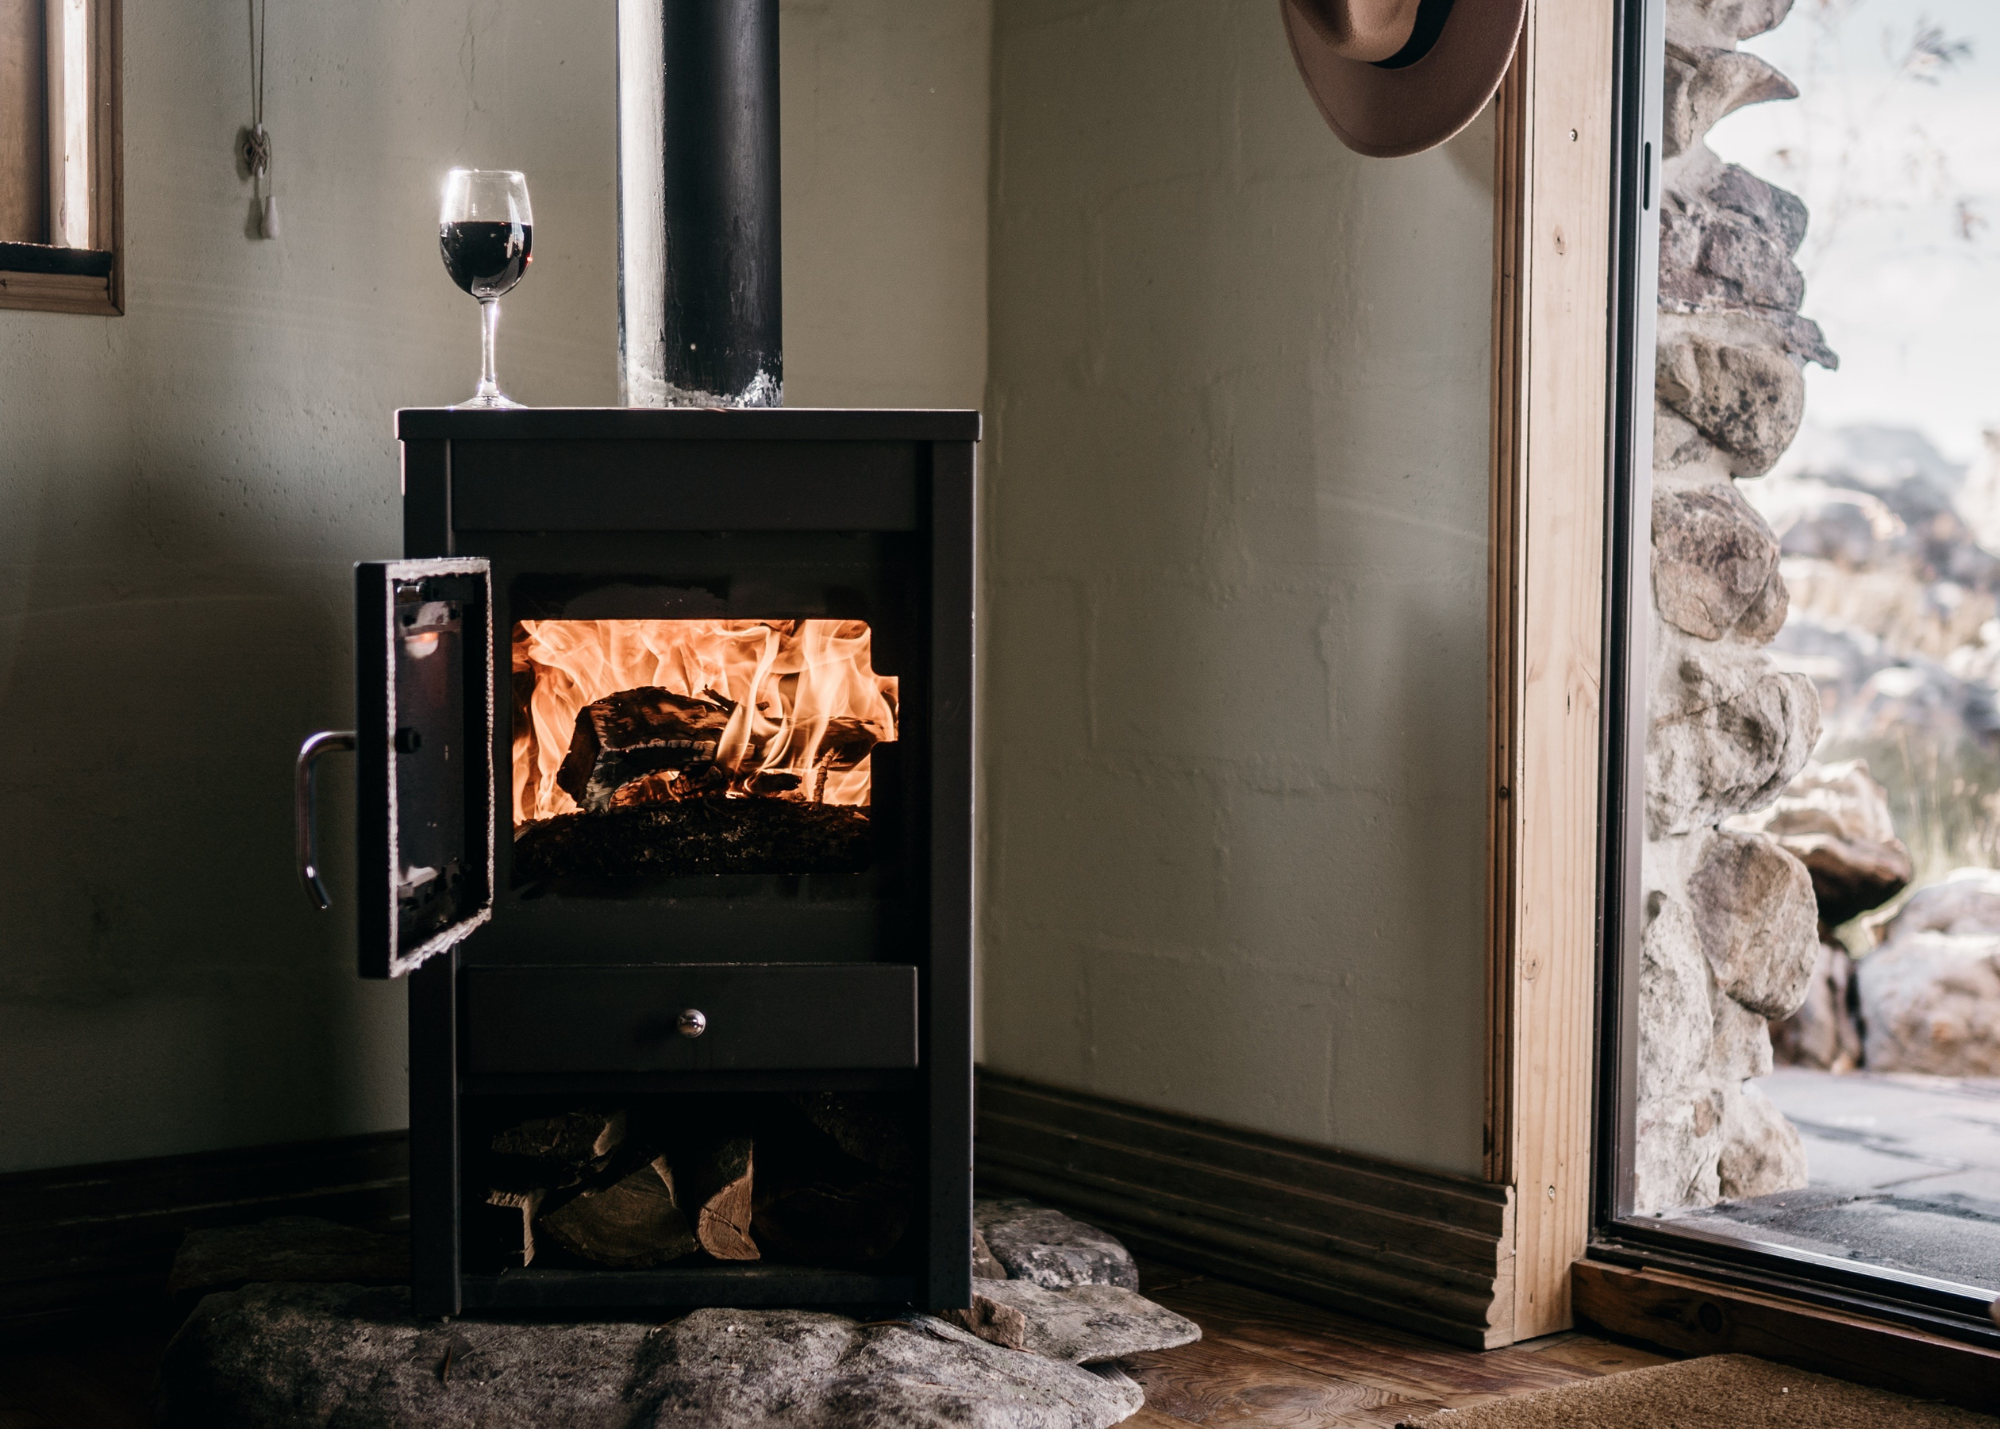 Si estás buscando la opción perfecta para tener tu hogar cálido y acogedor, no lo pienses más, las estufas, tanto de pellet como de leña, son perfectas para calentar toda tu casa. La naturaleza nos ayuda a ahorrar energía.